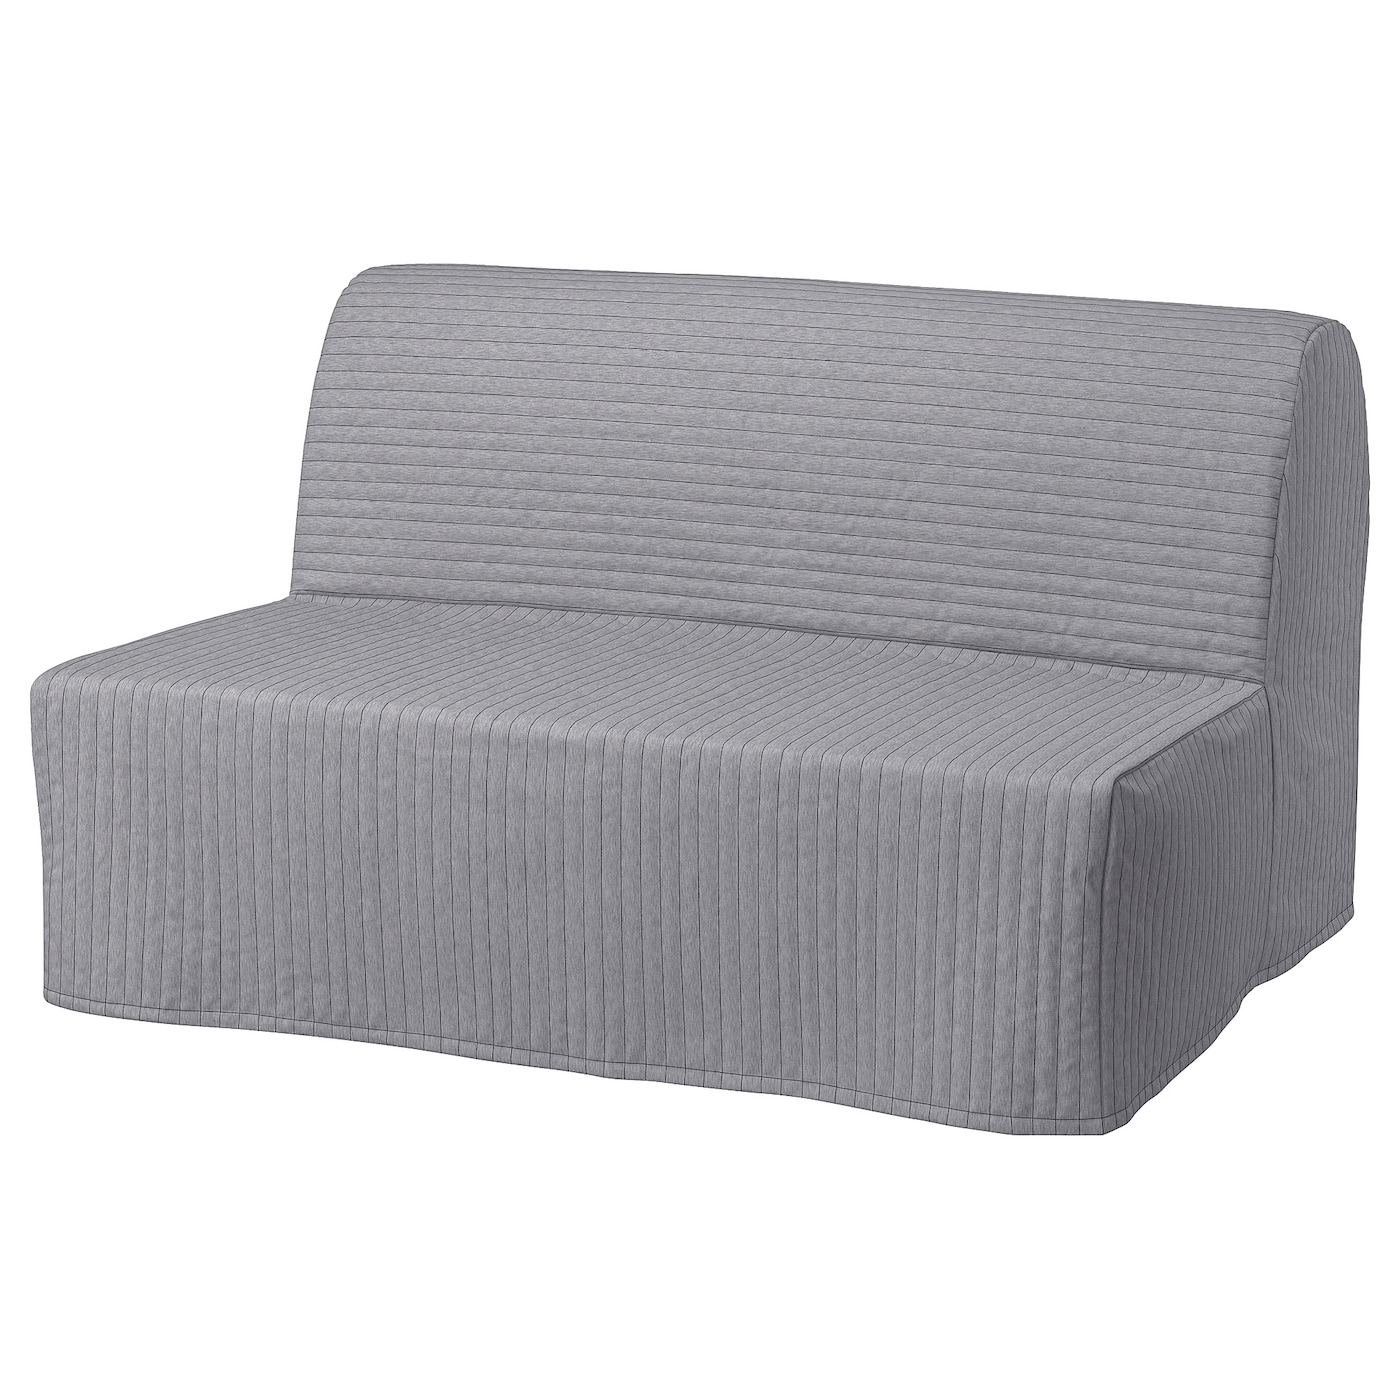 ЛИКСЕЛЕ МУРБО 2 раскладных дивана-кровати, Книса светло-серый LYCKSELE MURBO IKEA диван кровать шарм дизайн уют 2 серый